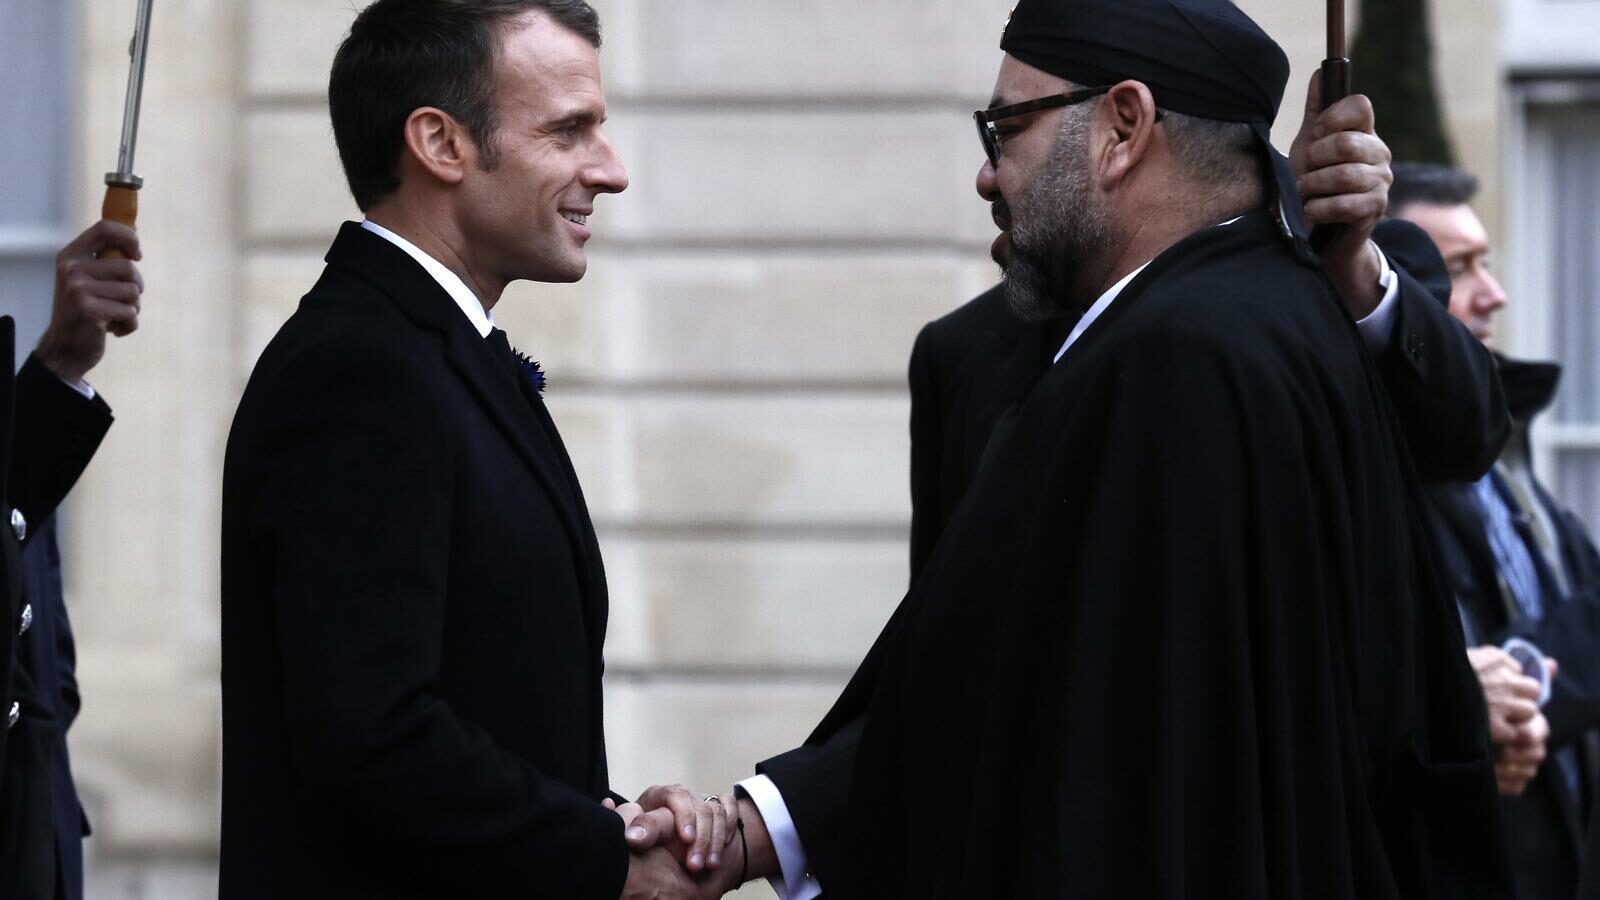 El presidente francés Emmanuel Macron saluda al rey de Marruecos Mohammed VI durante una visita a París a finales del 2018